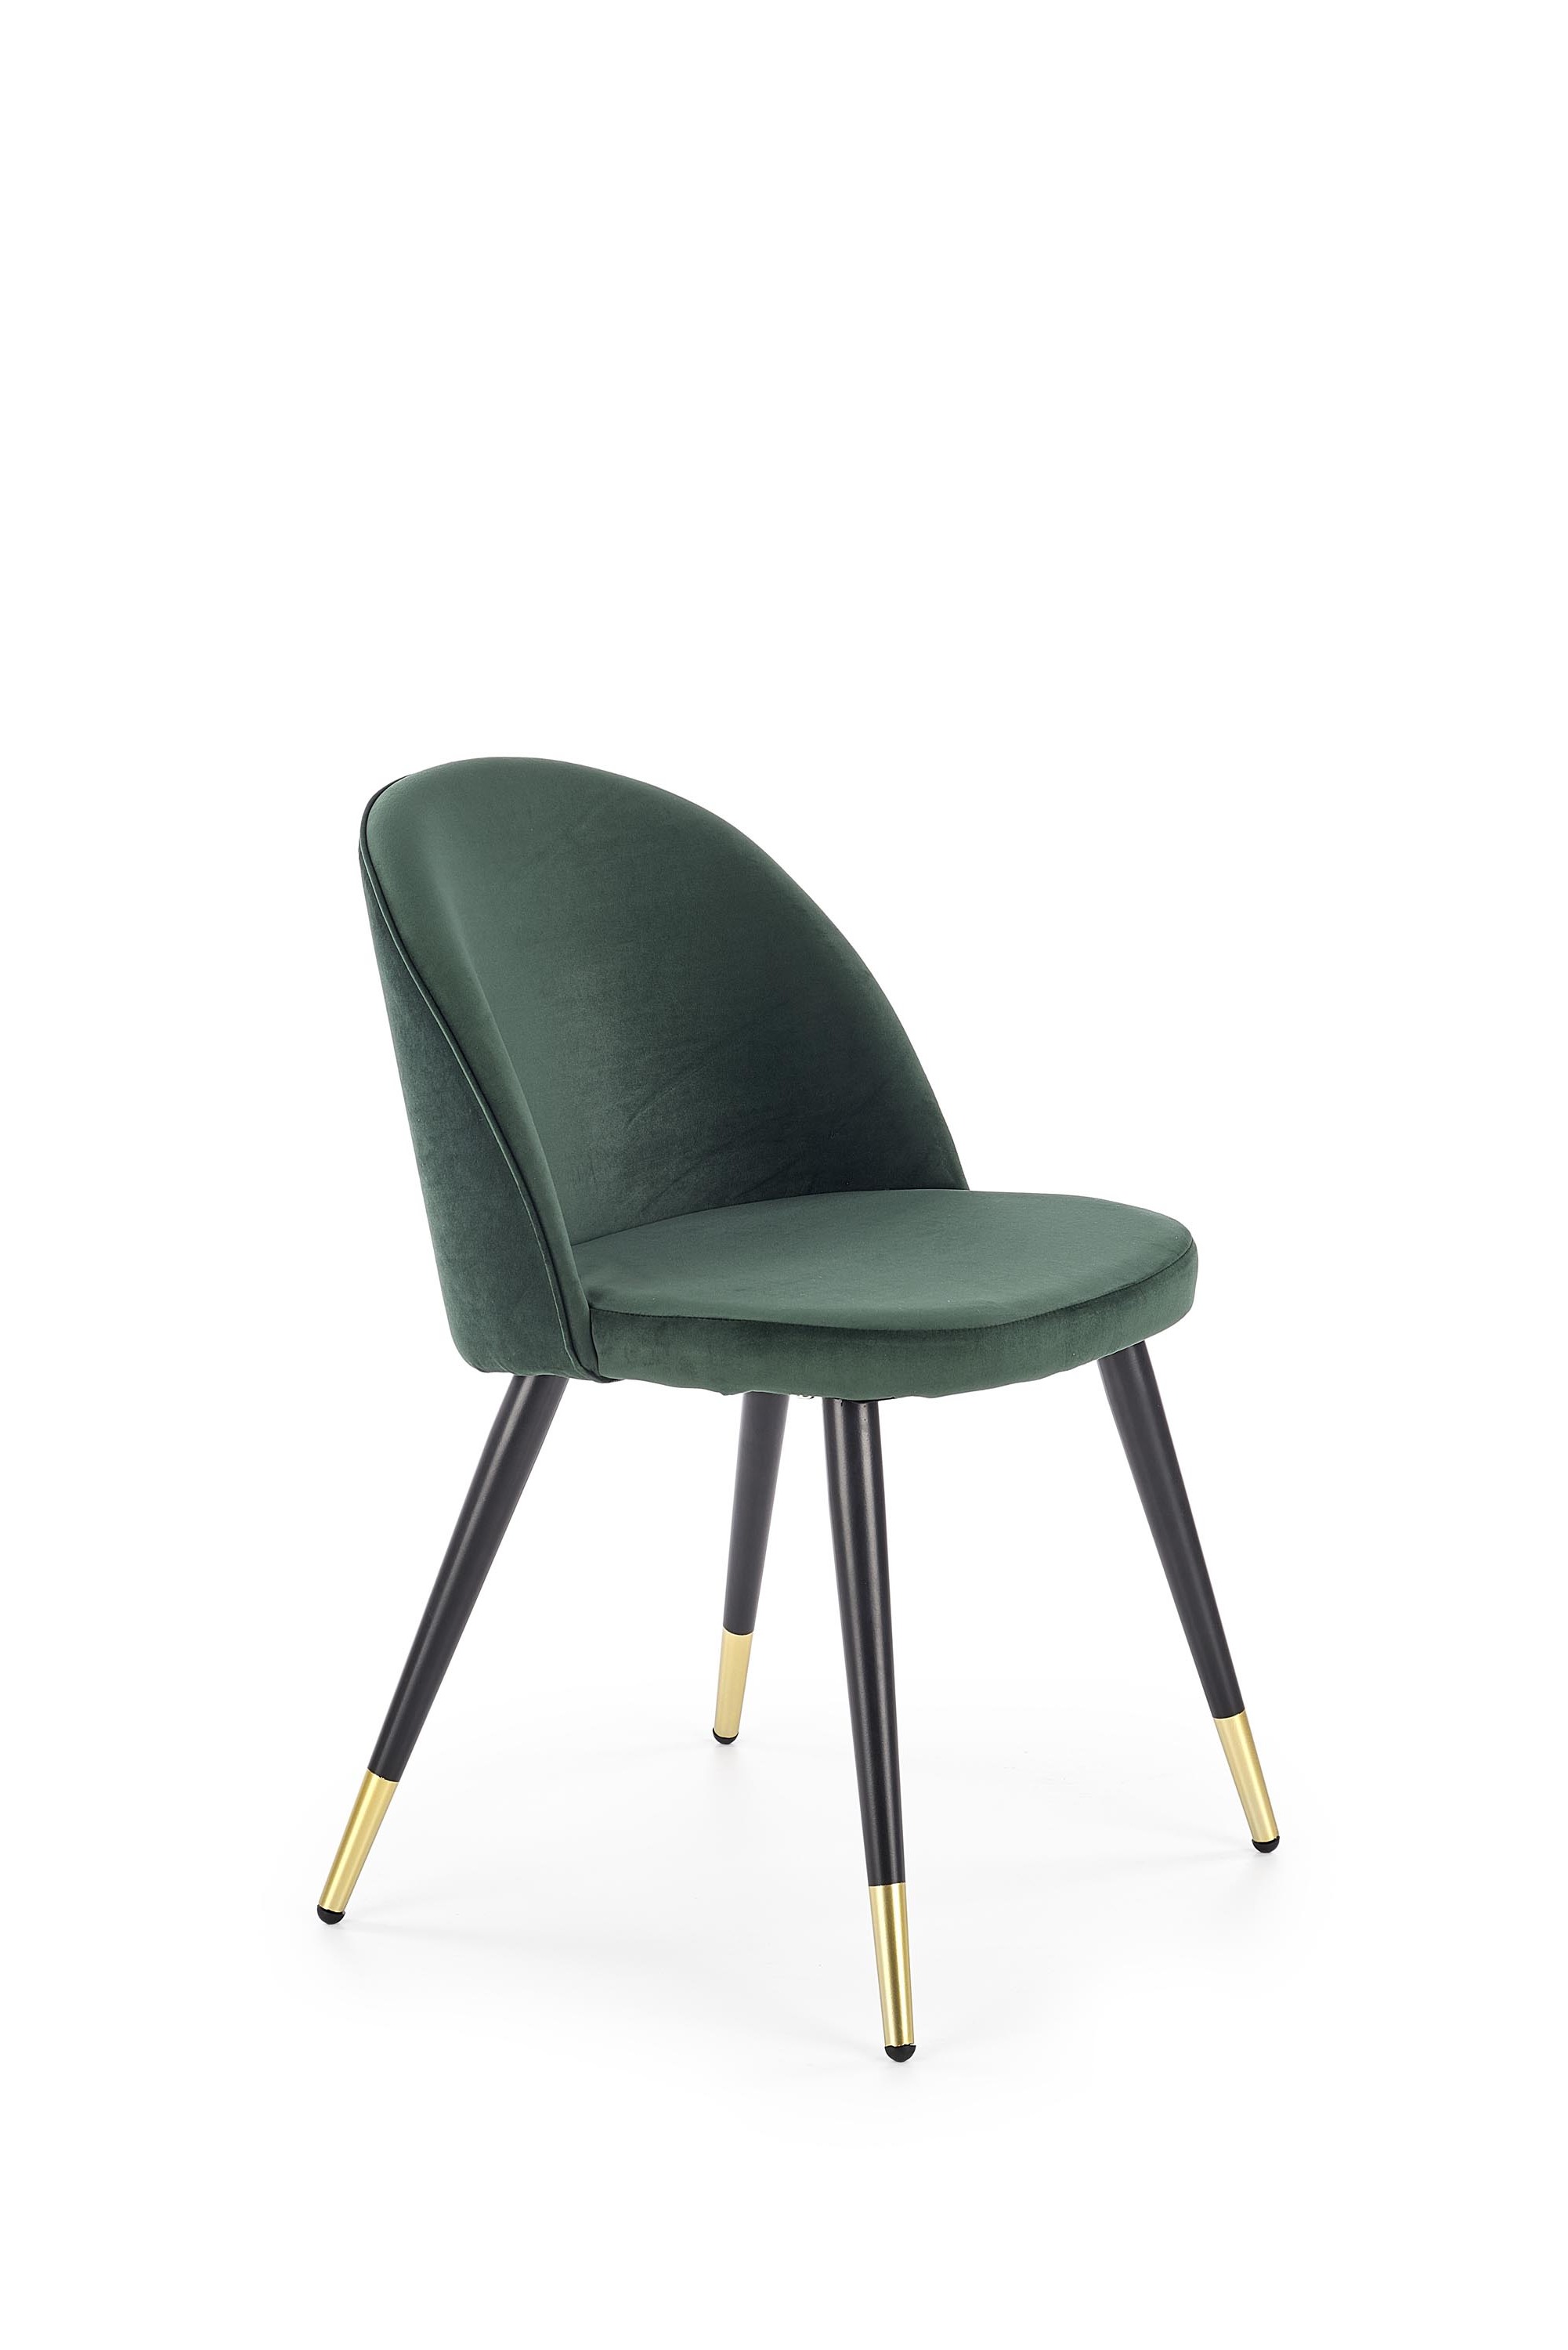 K315 krzesło nogi - czarny / złoty, tapicerka - c. zielony k315 krzesło nogi - czarny / złoty, tapicerka - c. zielony